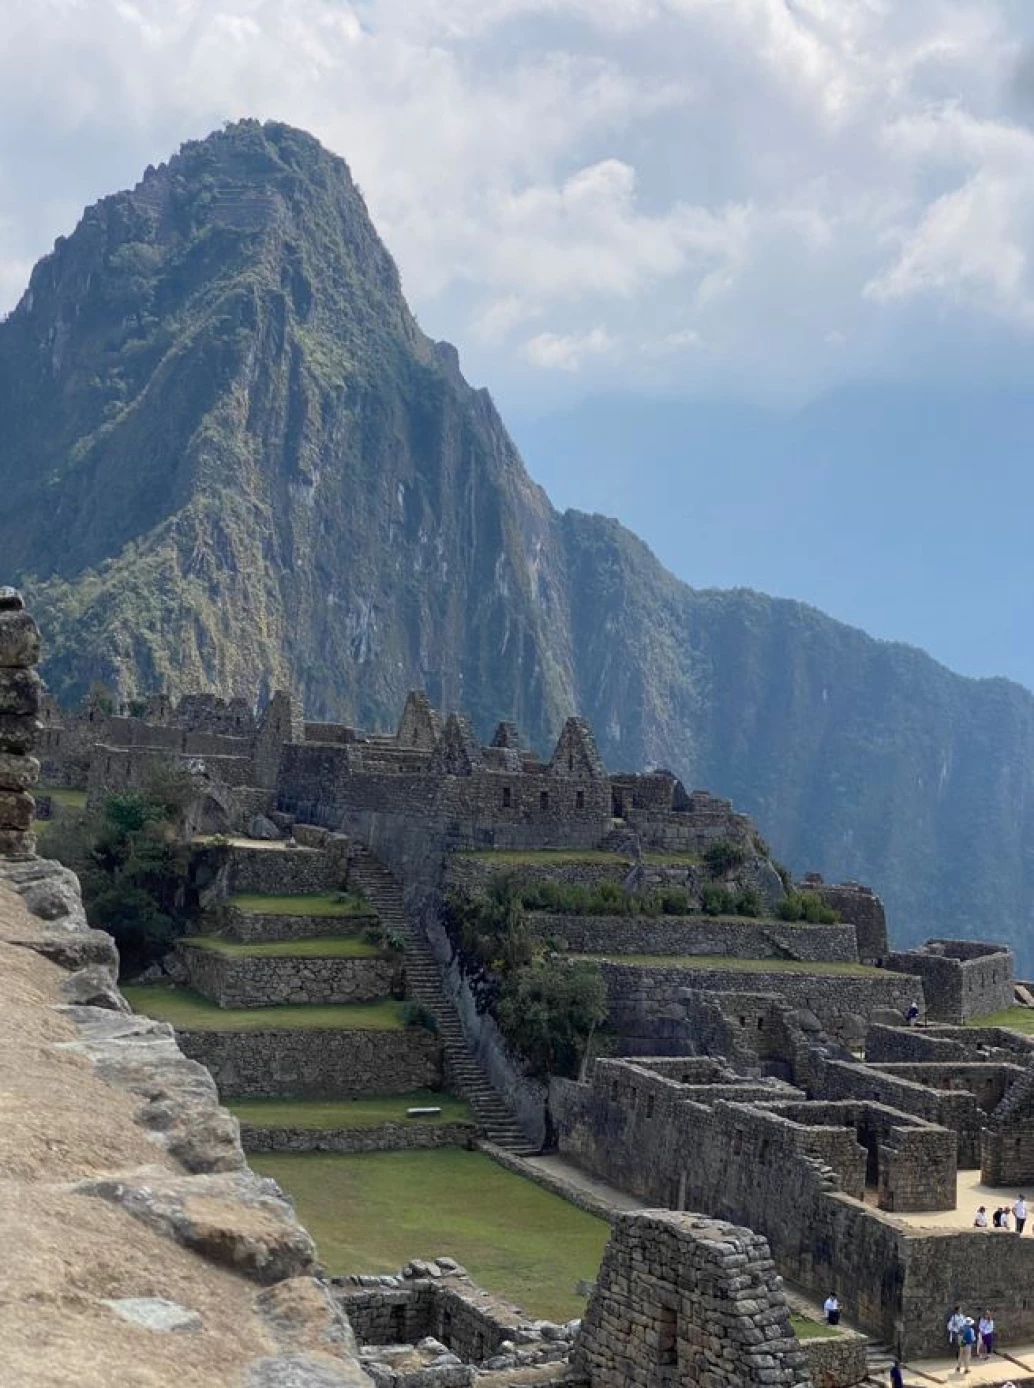 Construções com pedras empilhadas e gramados em região montanhosa no Peru, especificamente em Machu Picchu